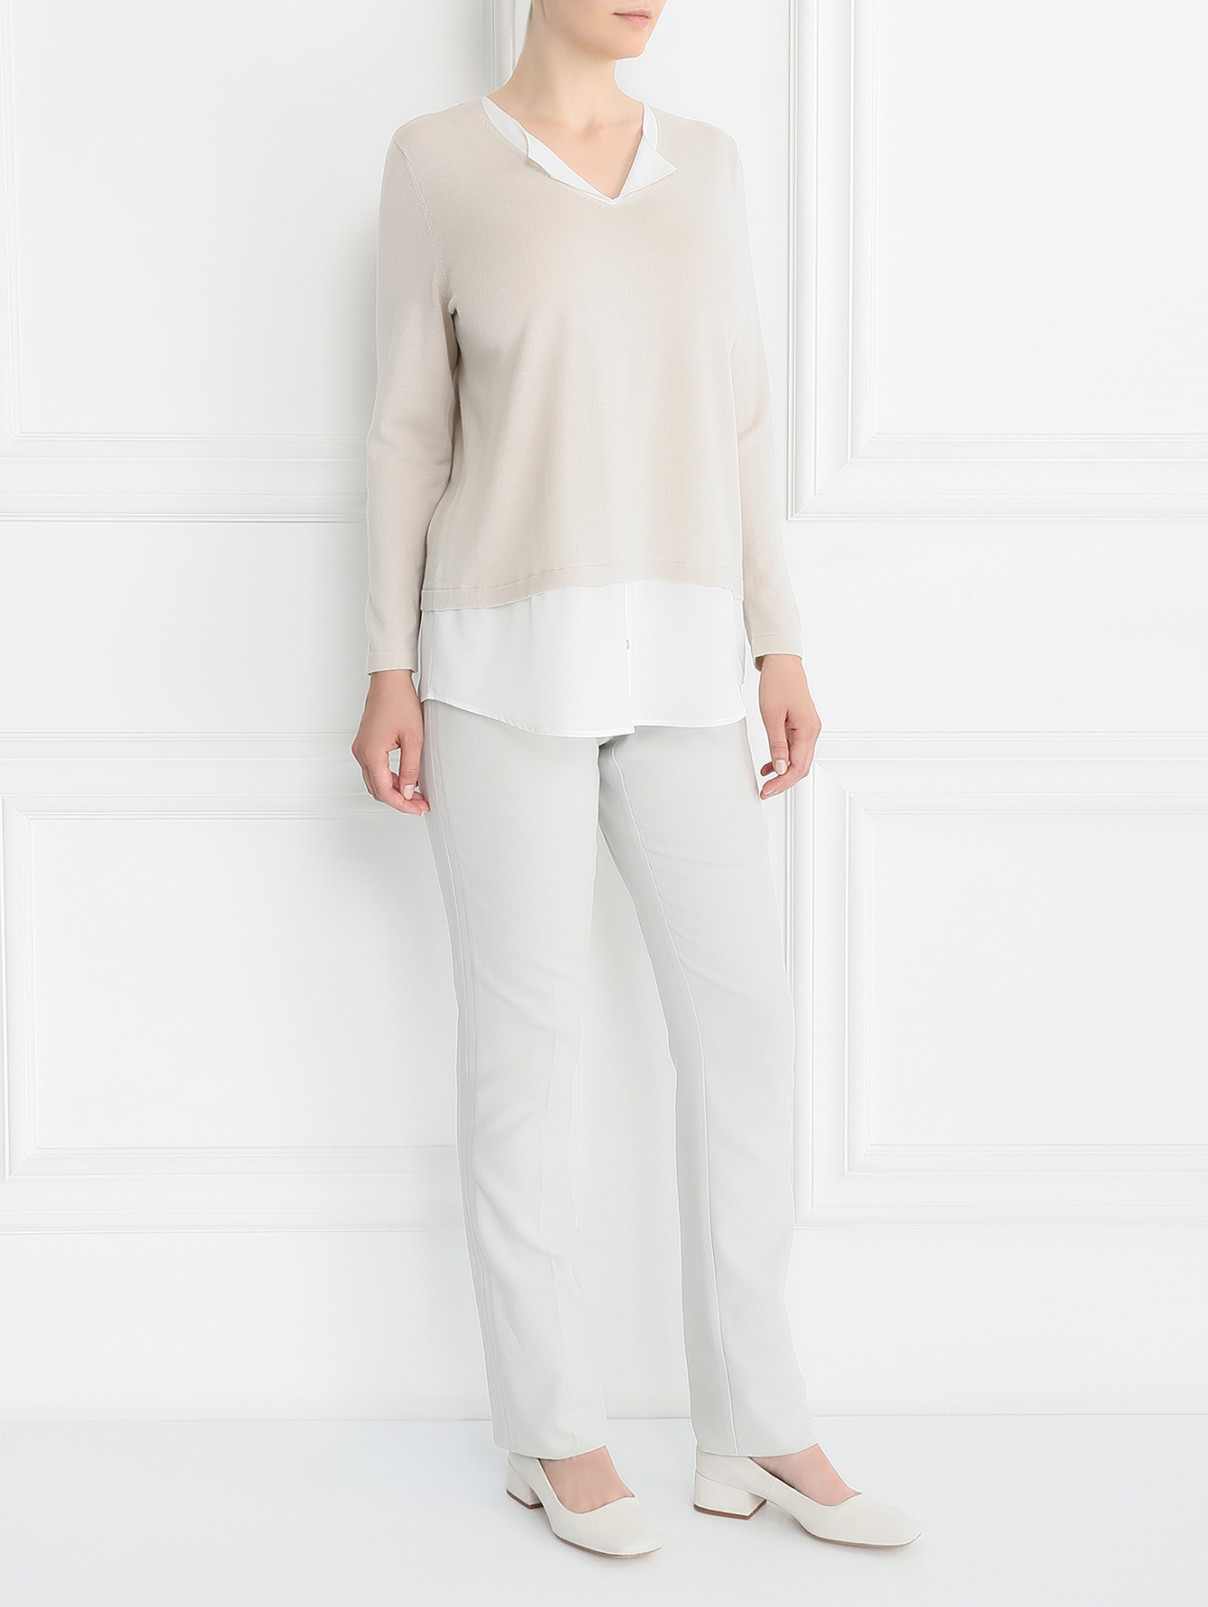 Зауженные брюки из хлопка с высокой посадкой Marina Rinaldi  –  Модель Общий вид  – Цвет:  Серый